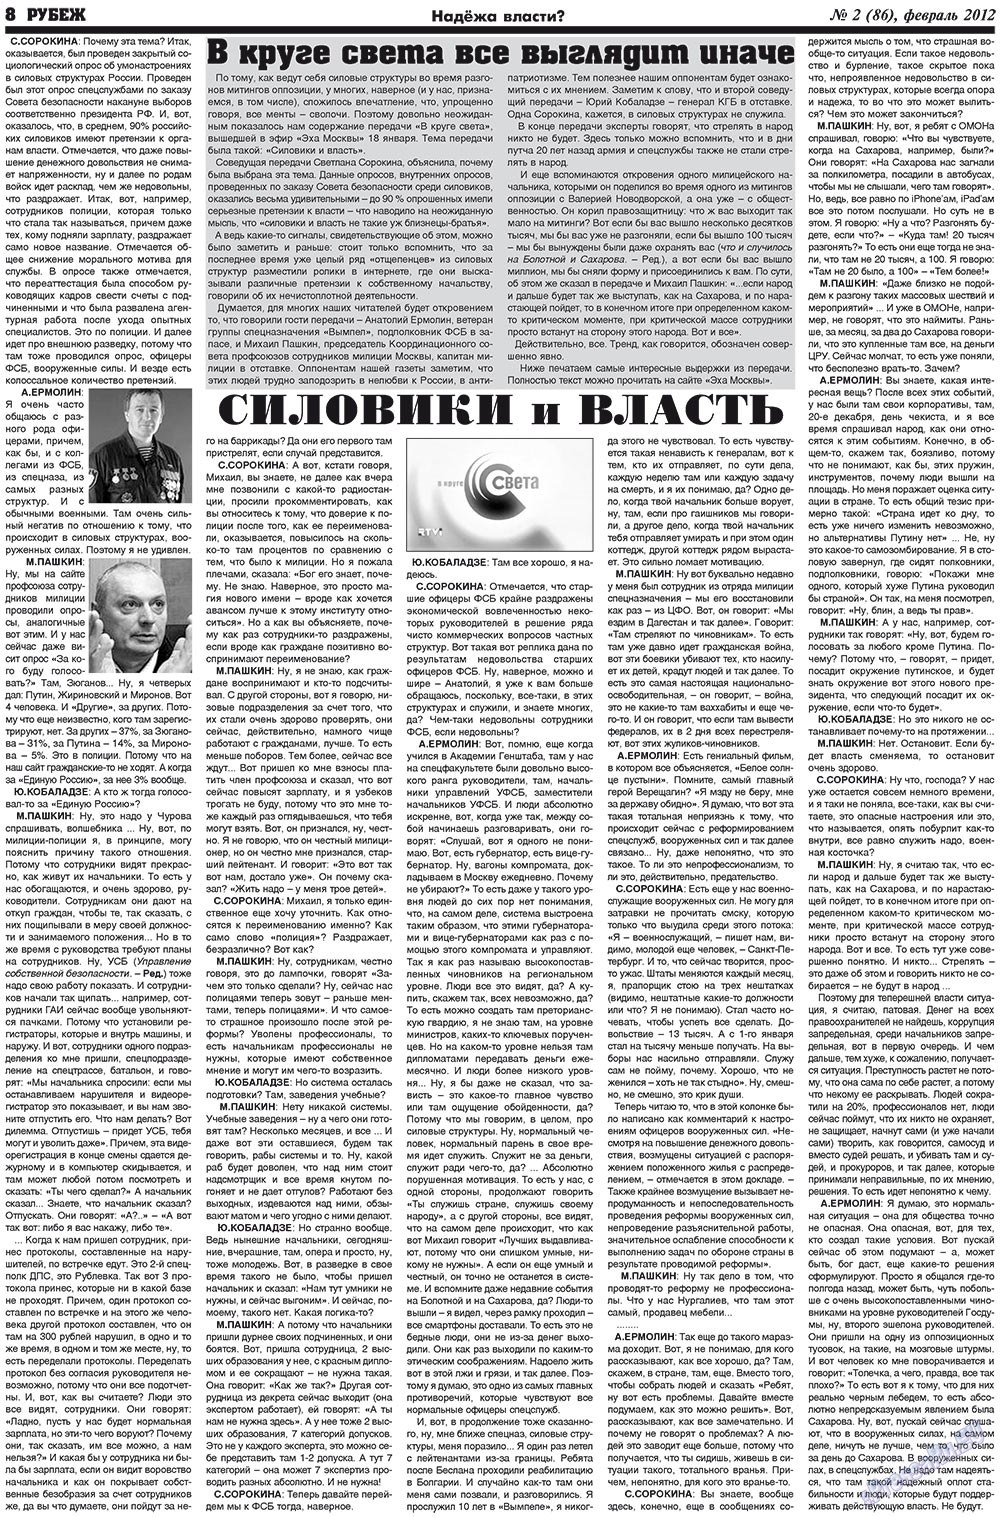 Рубеж (газета). 2012 год, номер 2, стр. 8